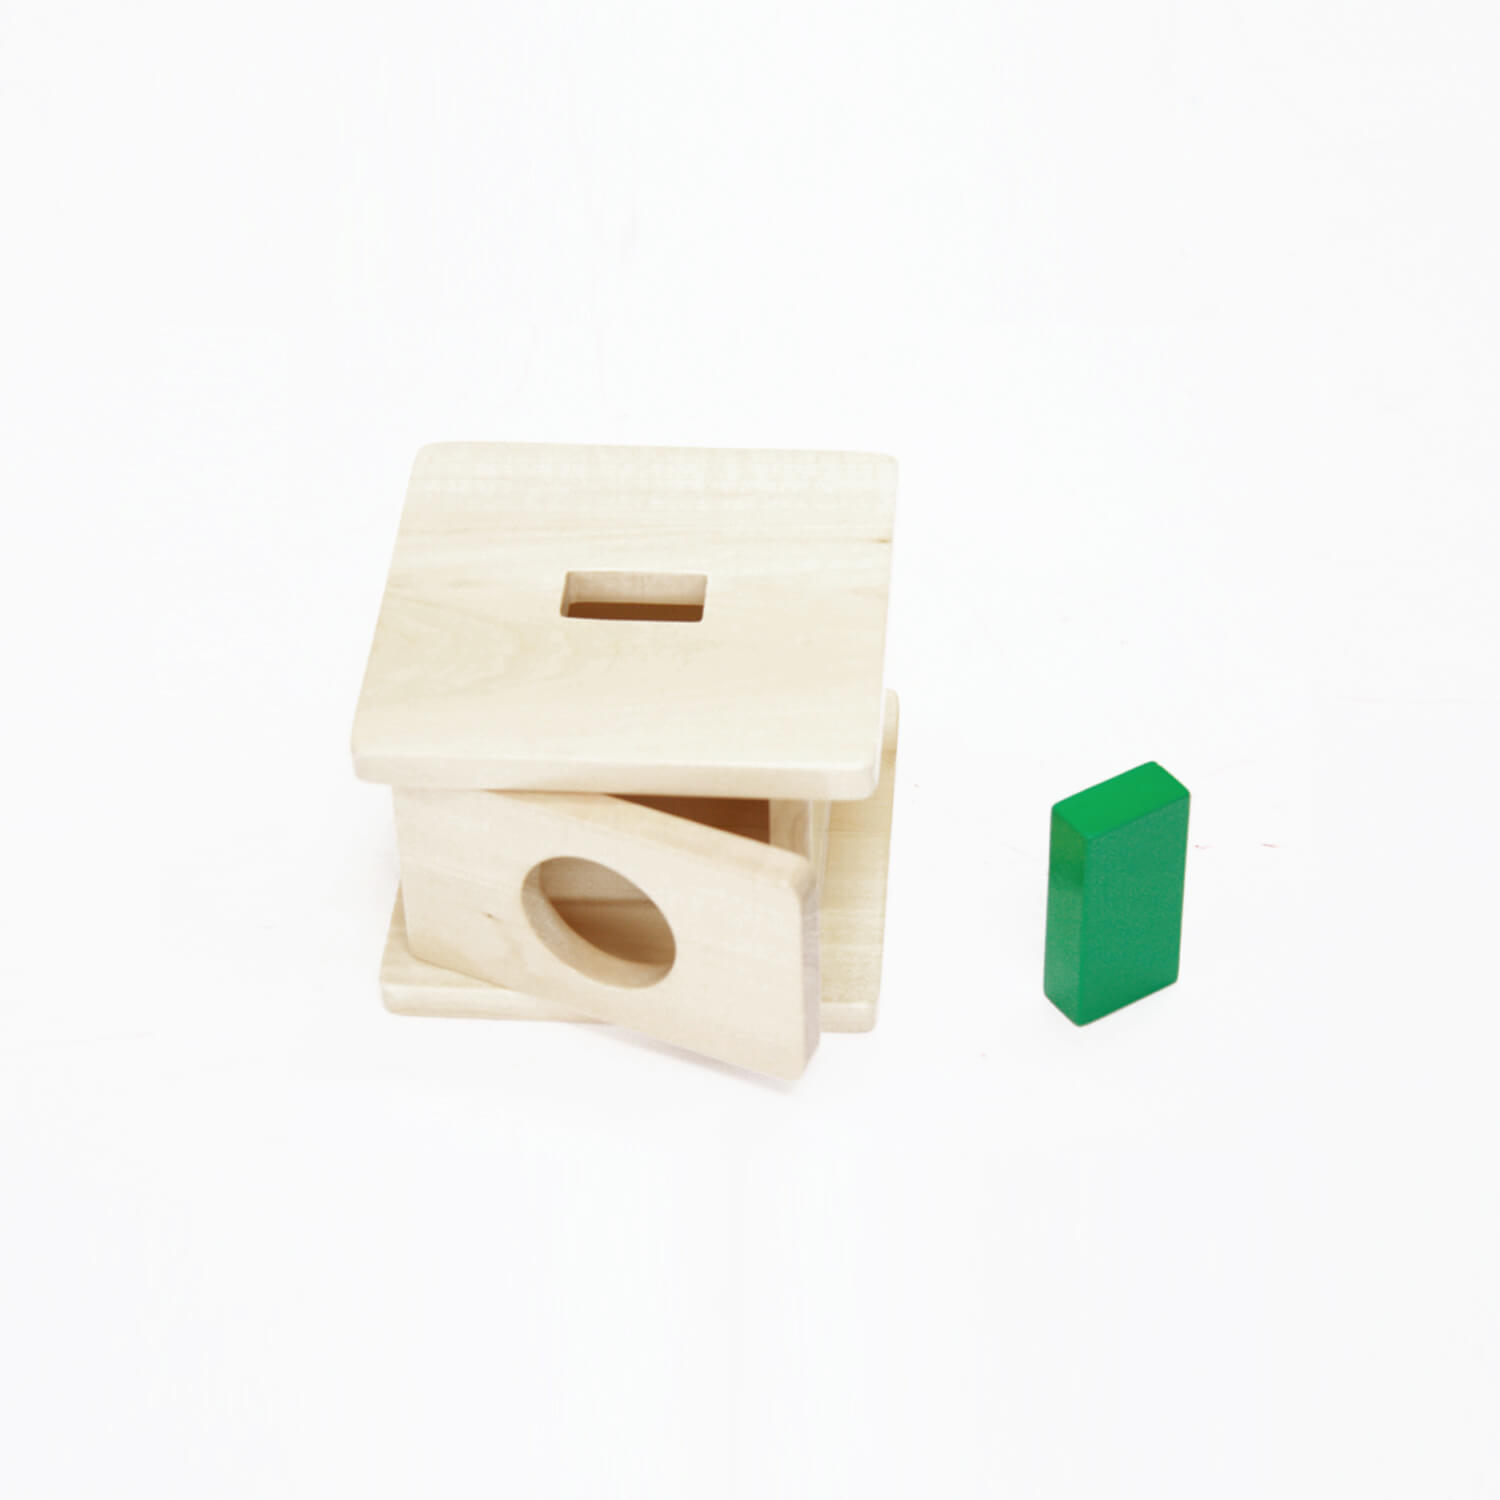 Imbucare Box With Rectangular Prism